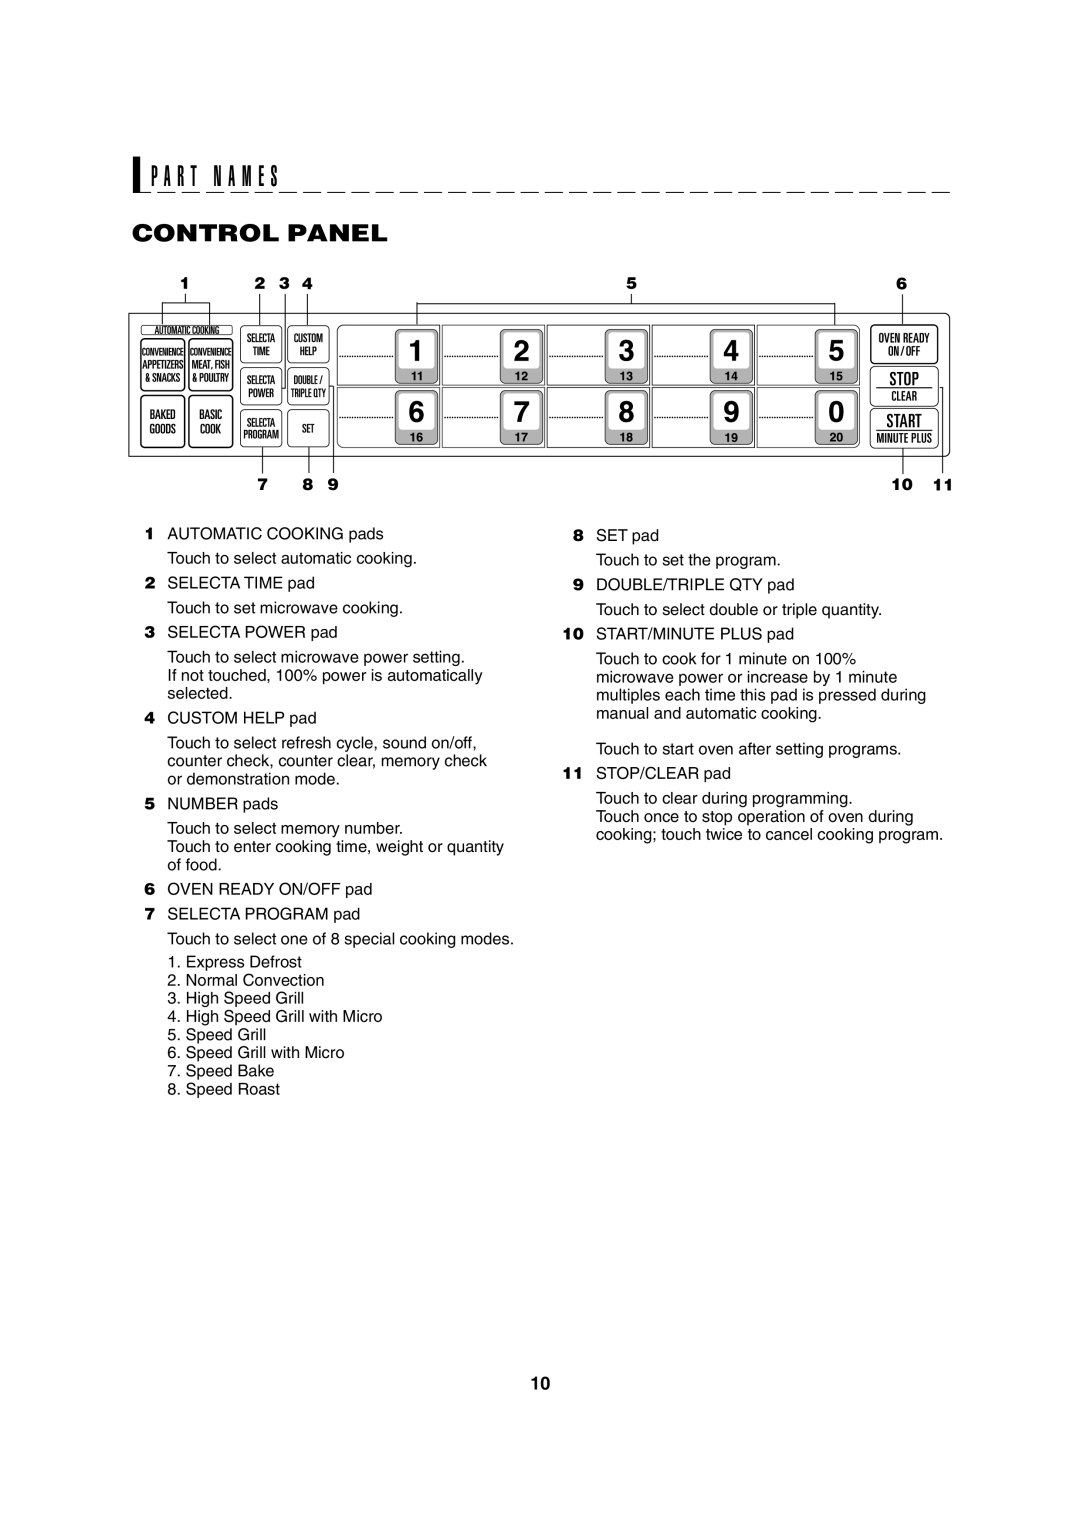 Sharp R-8000G operation manual P A R T N A M E S, Control Panel 